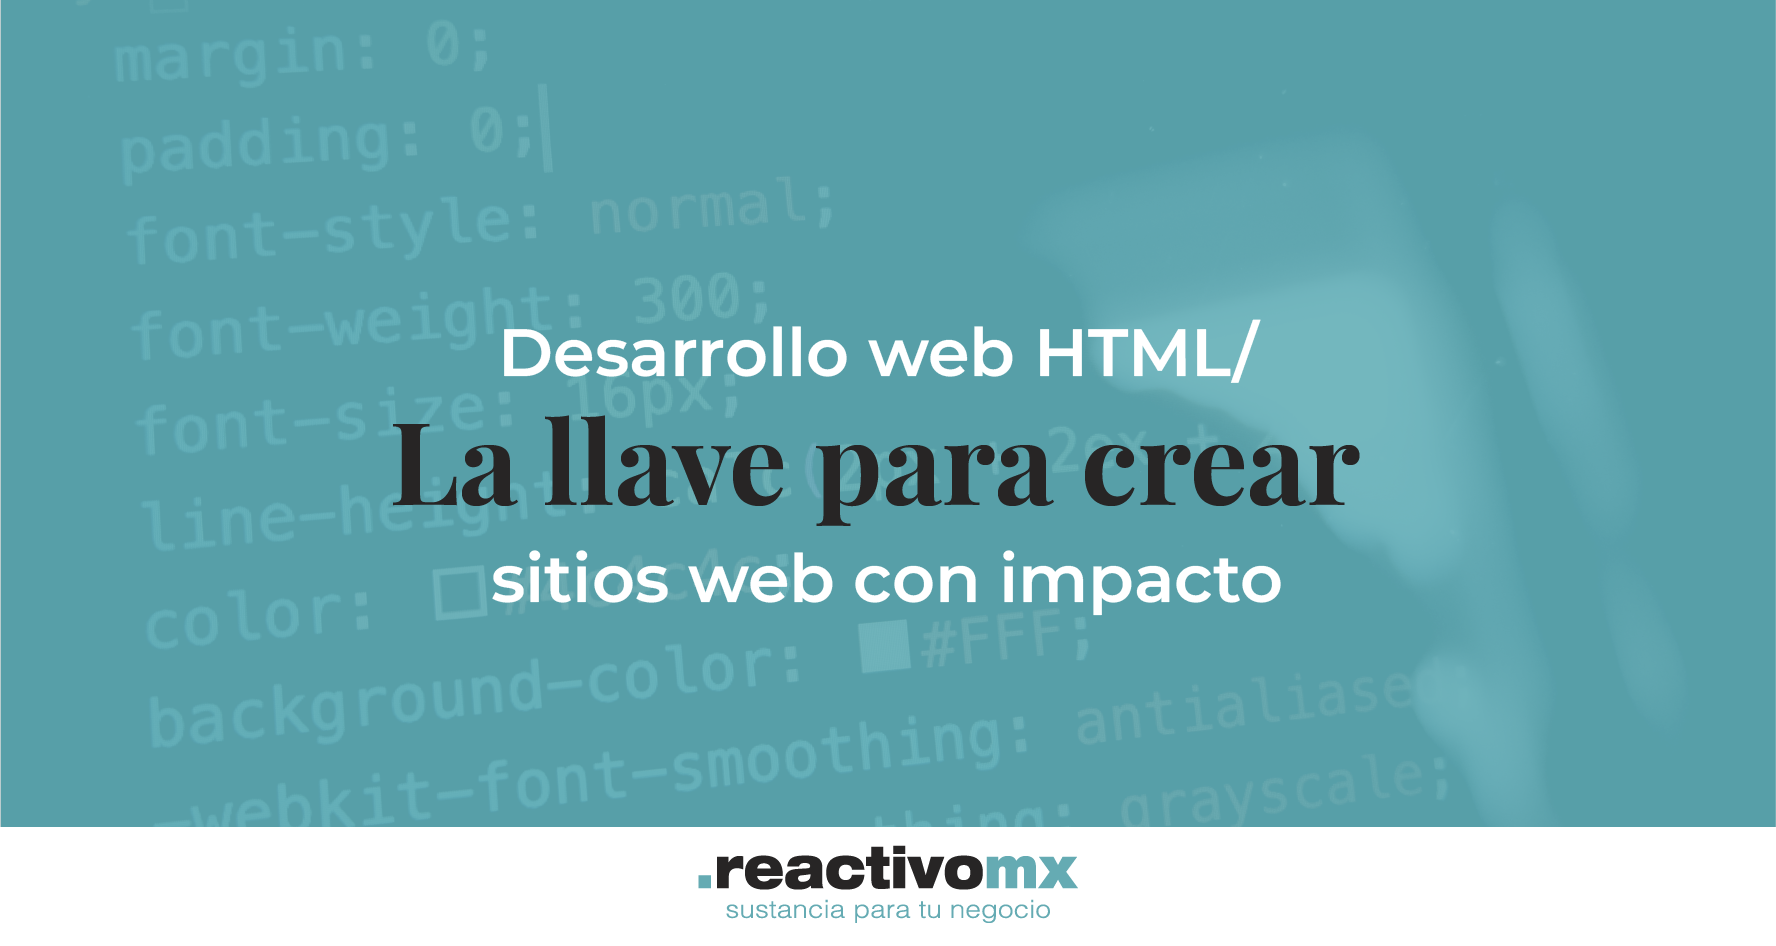 Desarrollo web HTML: La llave para crear sitios web con impacto